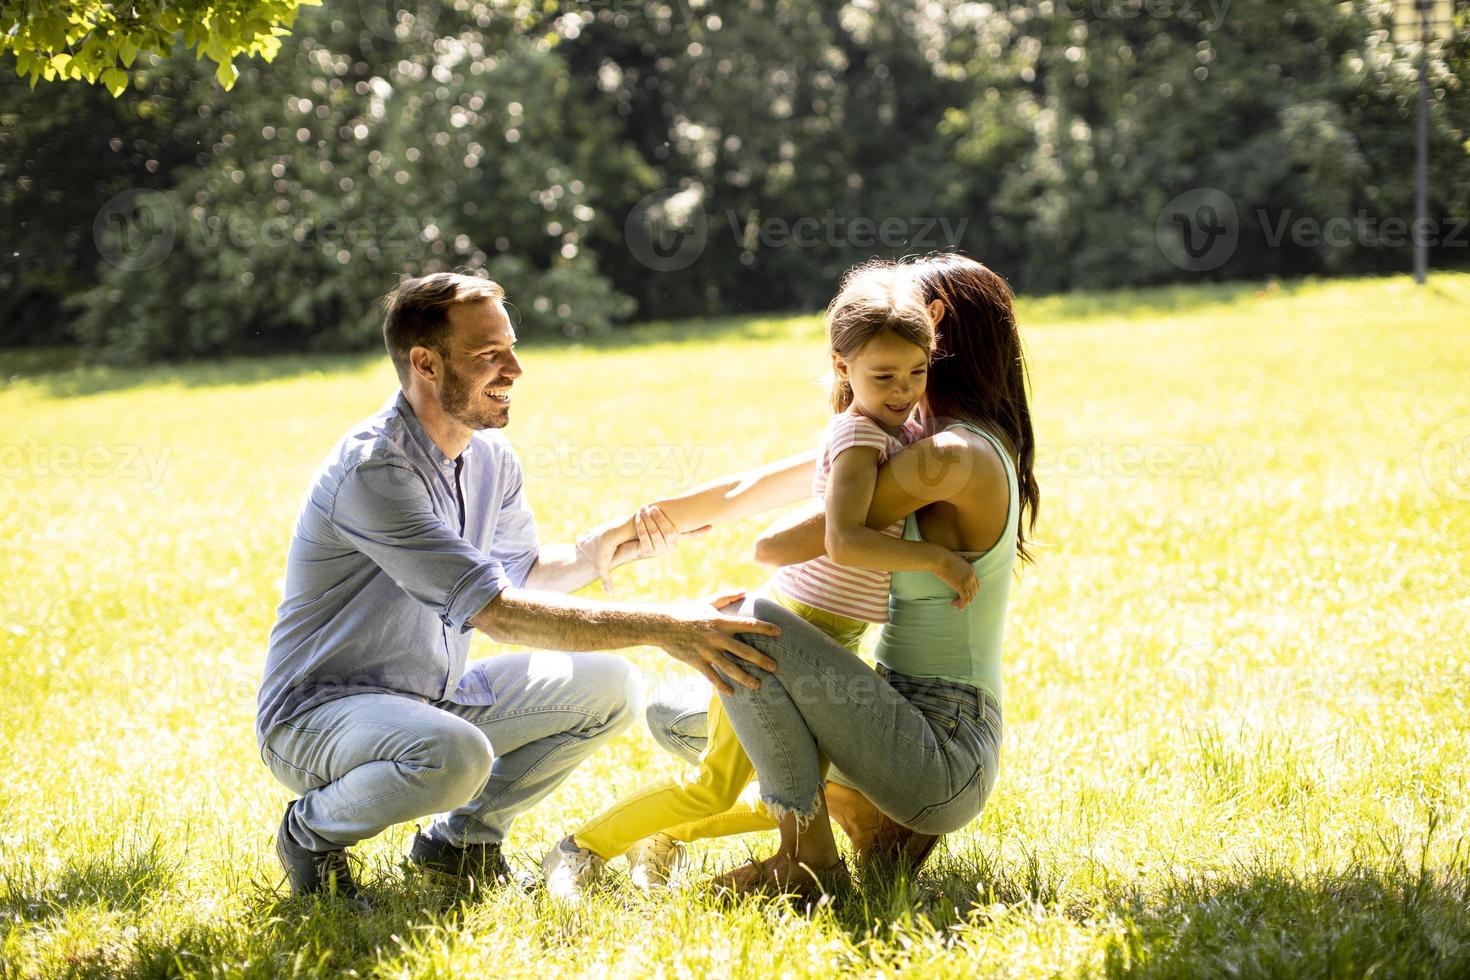 Familia joven feliz con linda hijita divirtiéndose en el parque en un día soleado foto